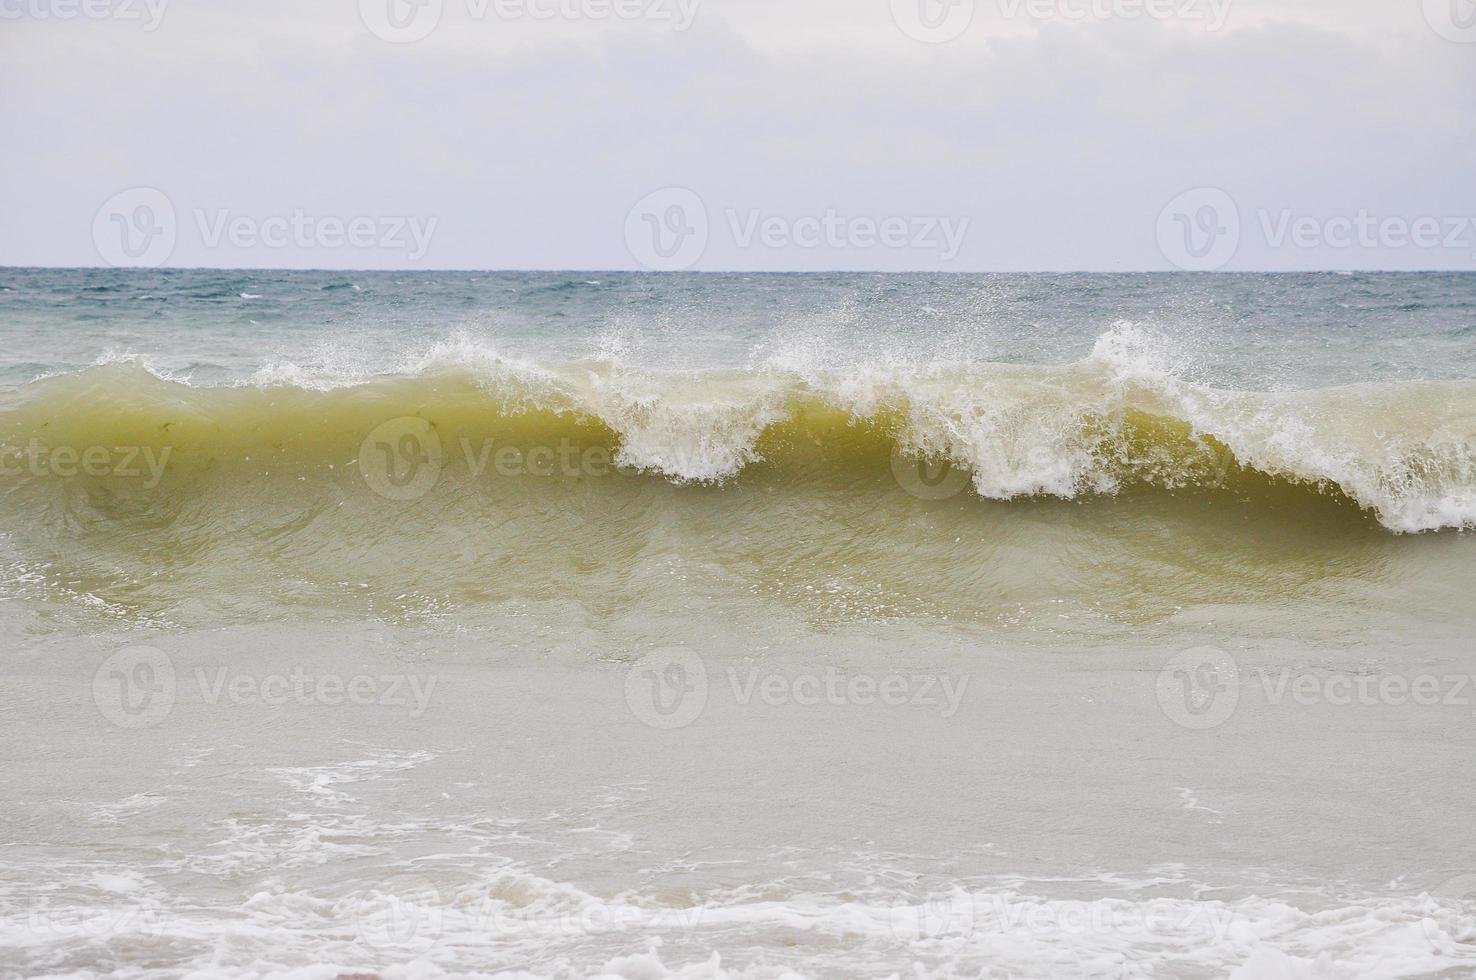 dinâmica das ondas oceânicas foto